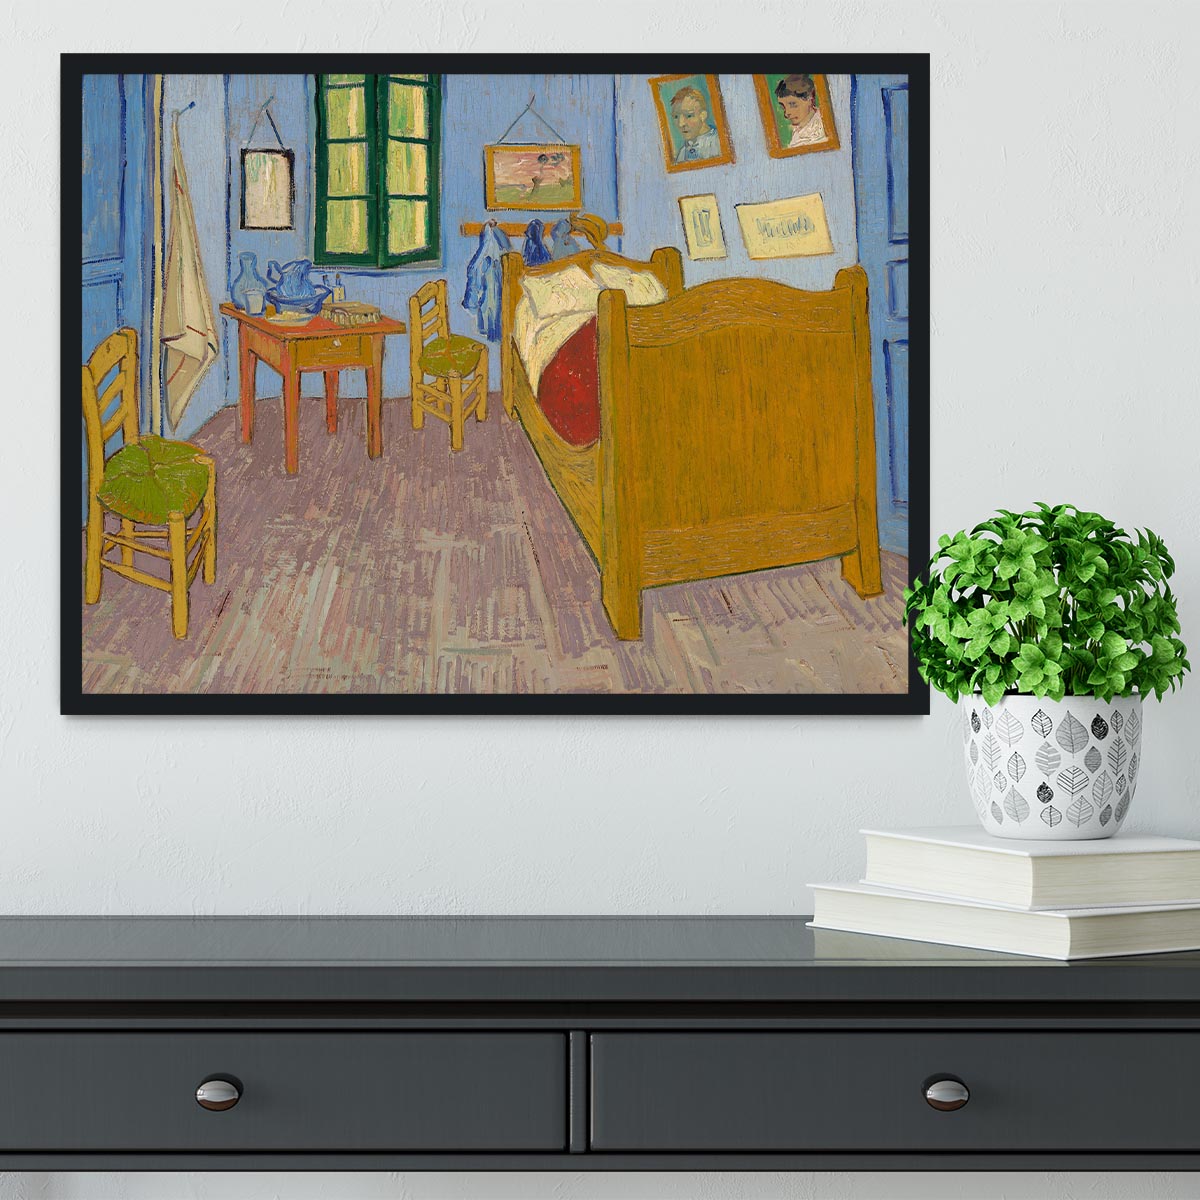 Vincents bedroom at Arles Framed Print - Canvas Art Rocks - 2